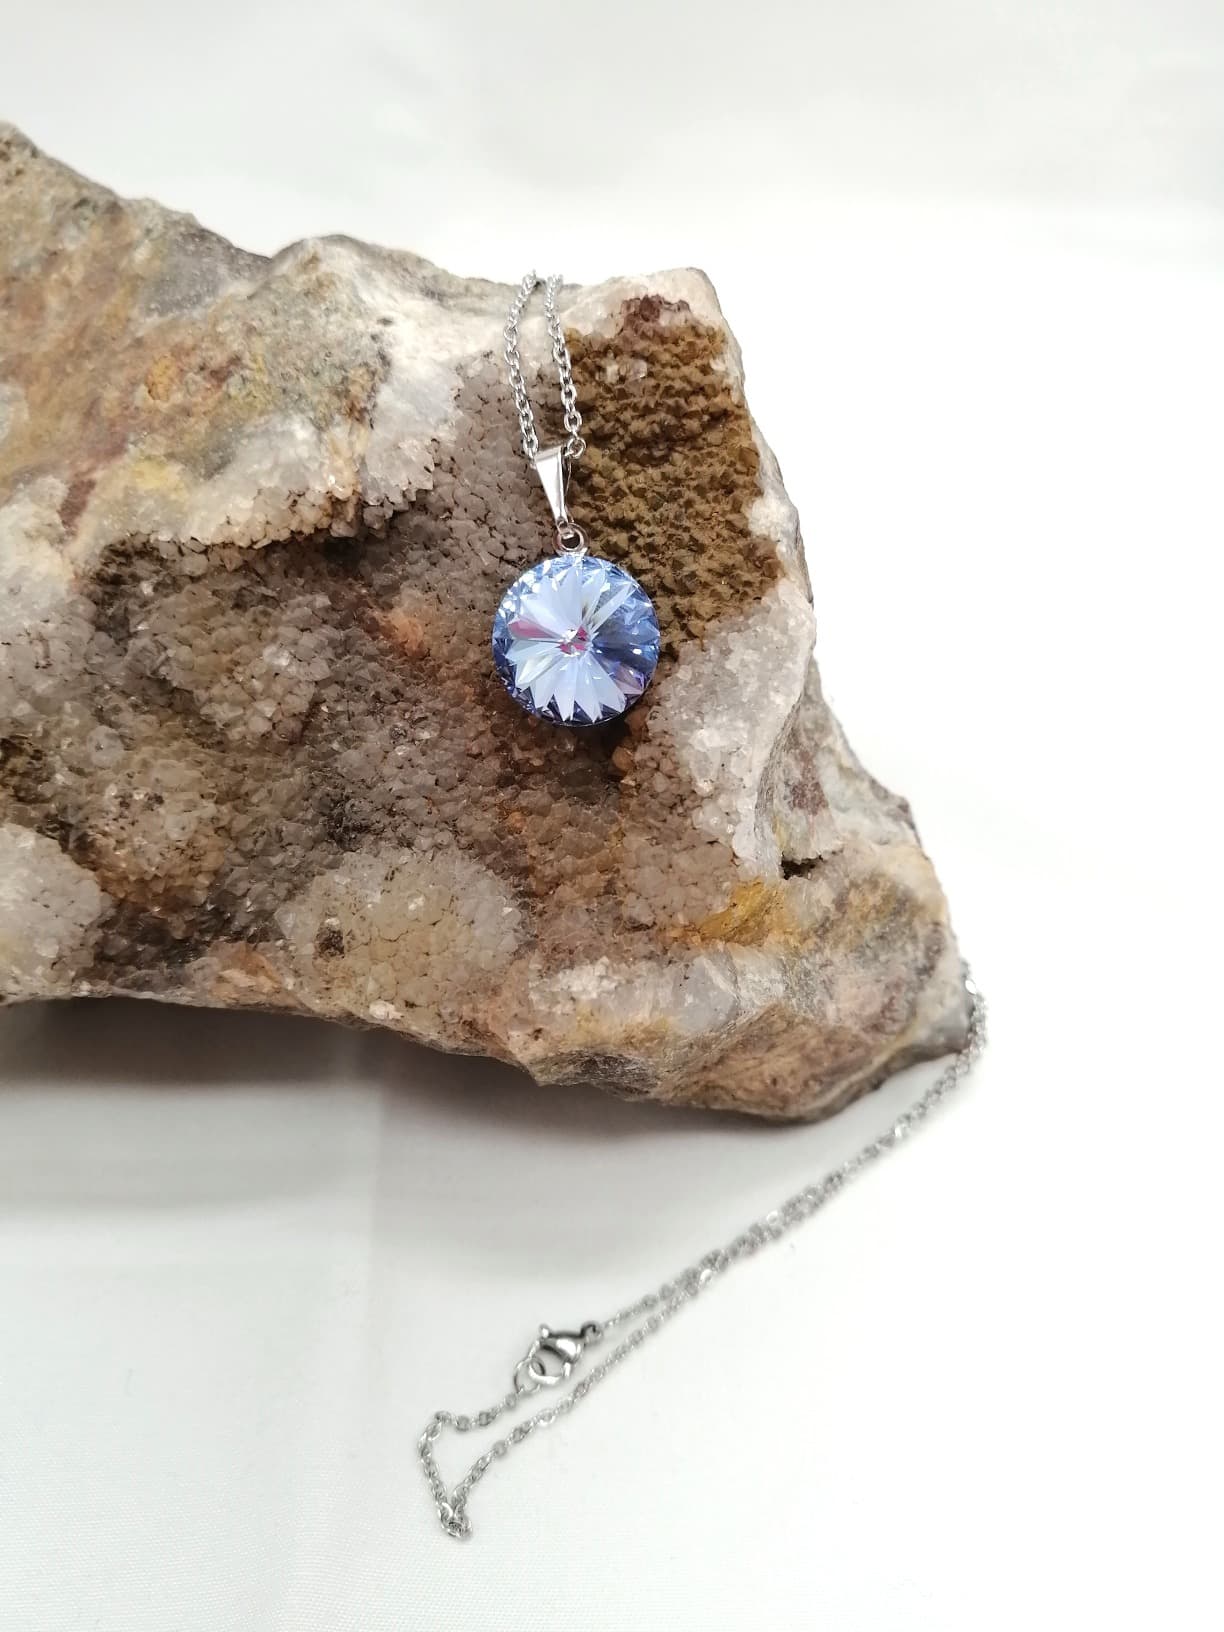 Řetízek s přívěškem Swarovski krystal light sapphire